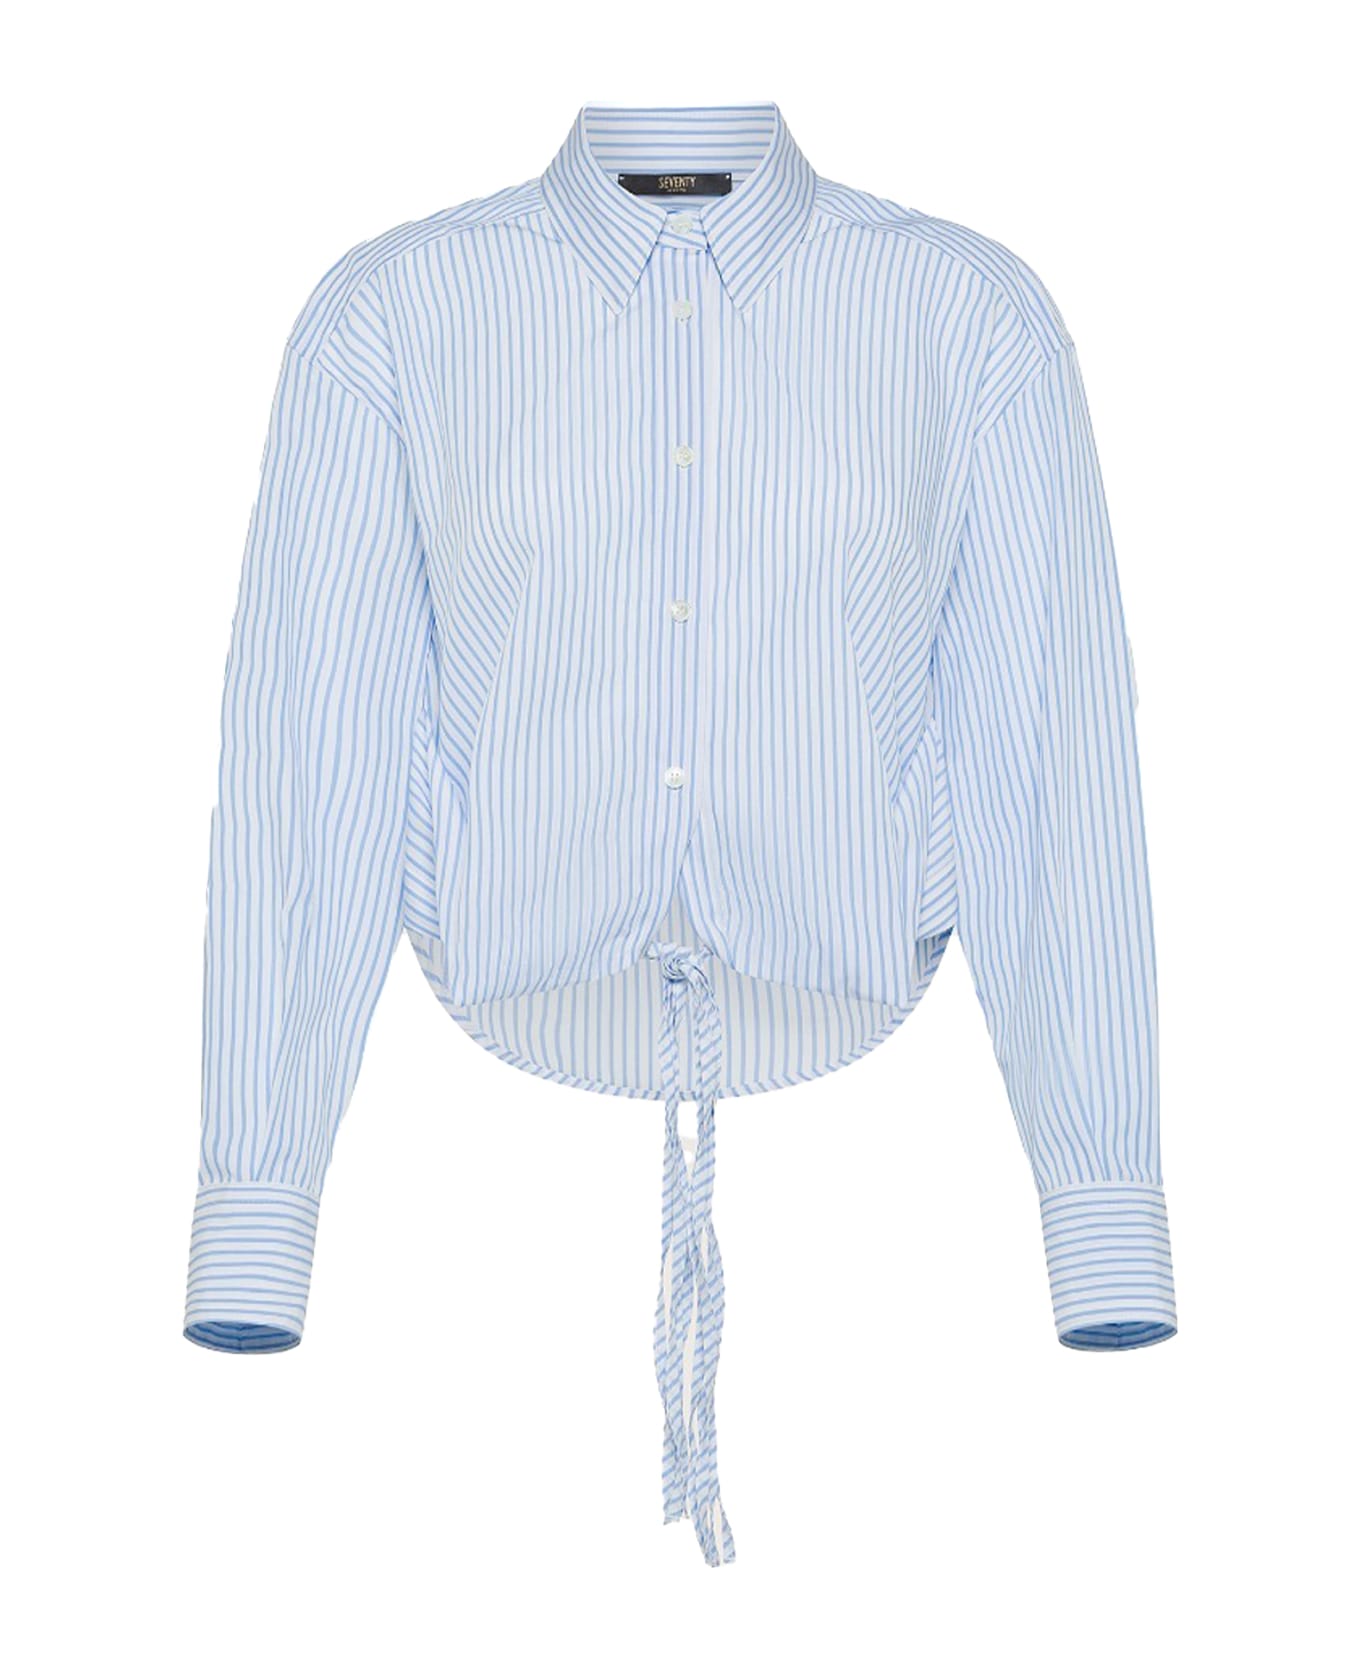 Seventy Light Blue Striped Shirt - AZZURRO シャツ